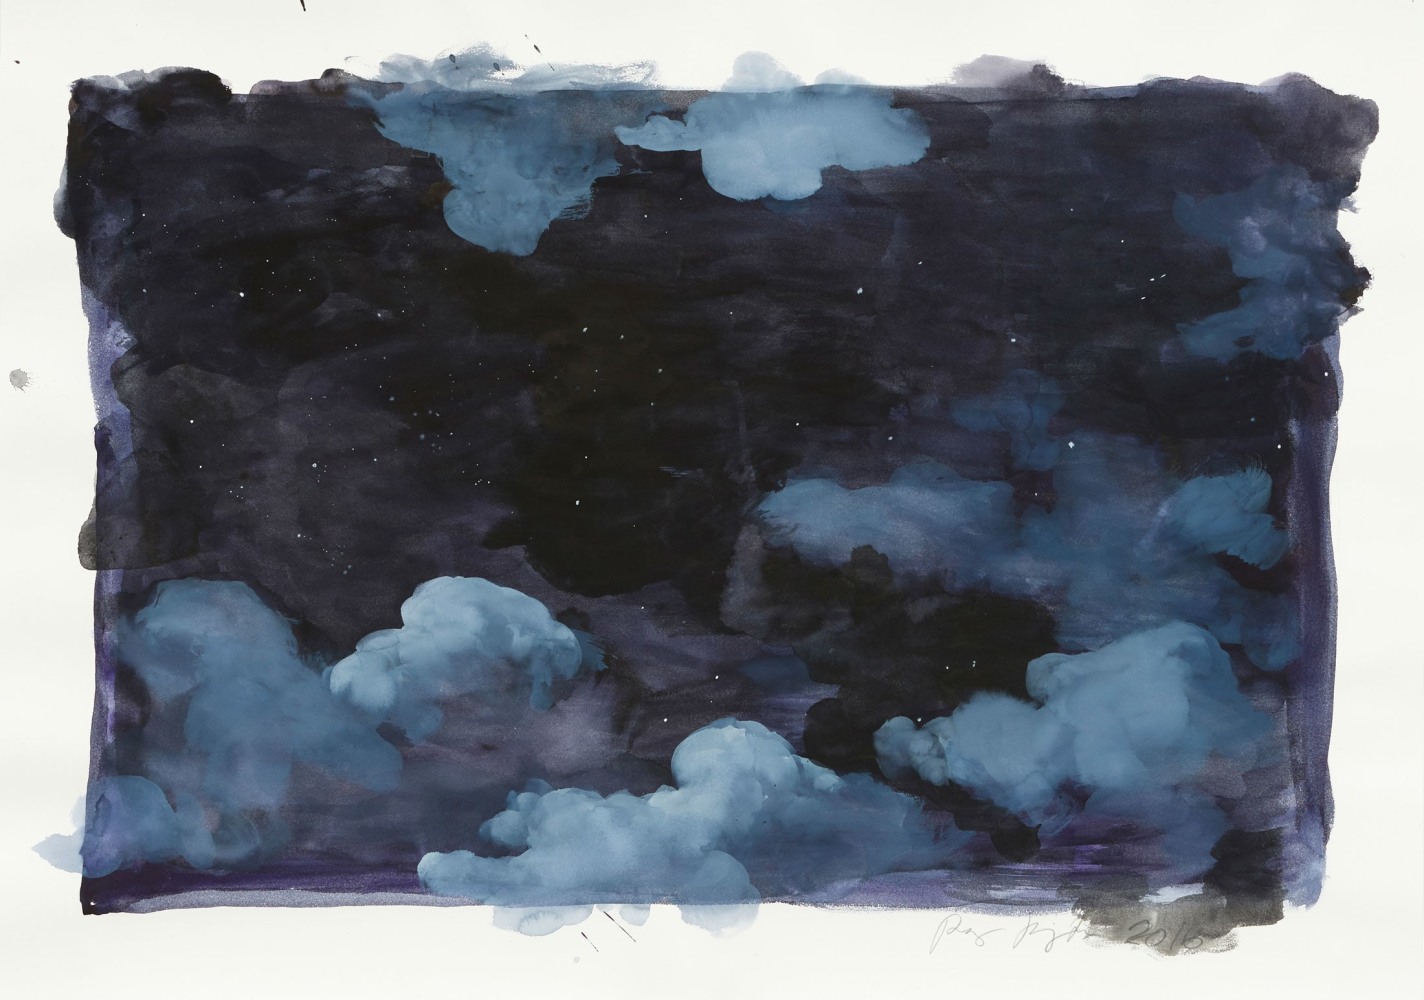 Ragnar Kjartansson
Die Nacht der Hochzeit, 2015
Watercolor on paper
36 2/3 x 50 inches
(93 x 127 cm)